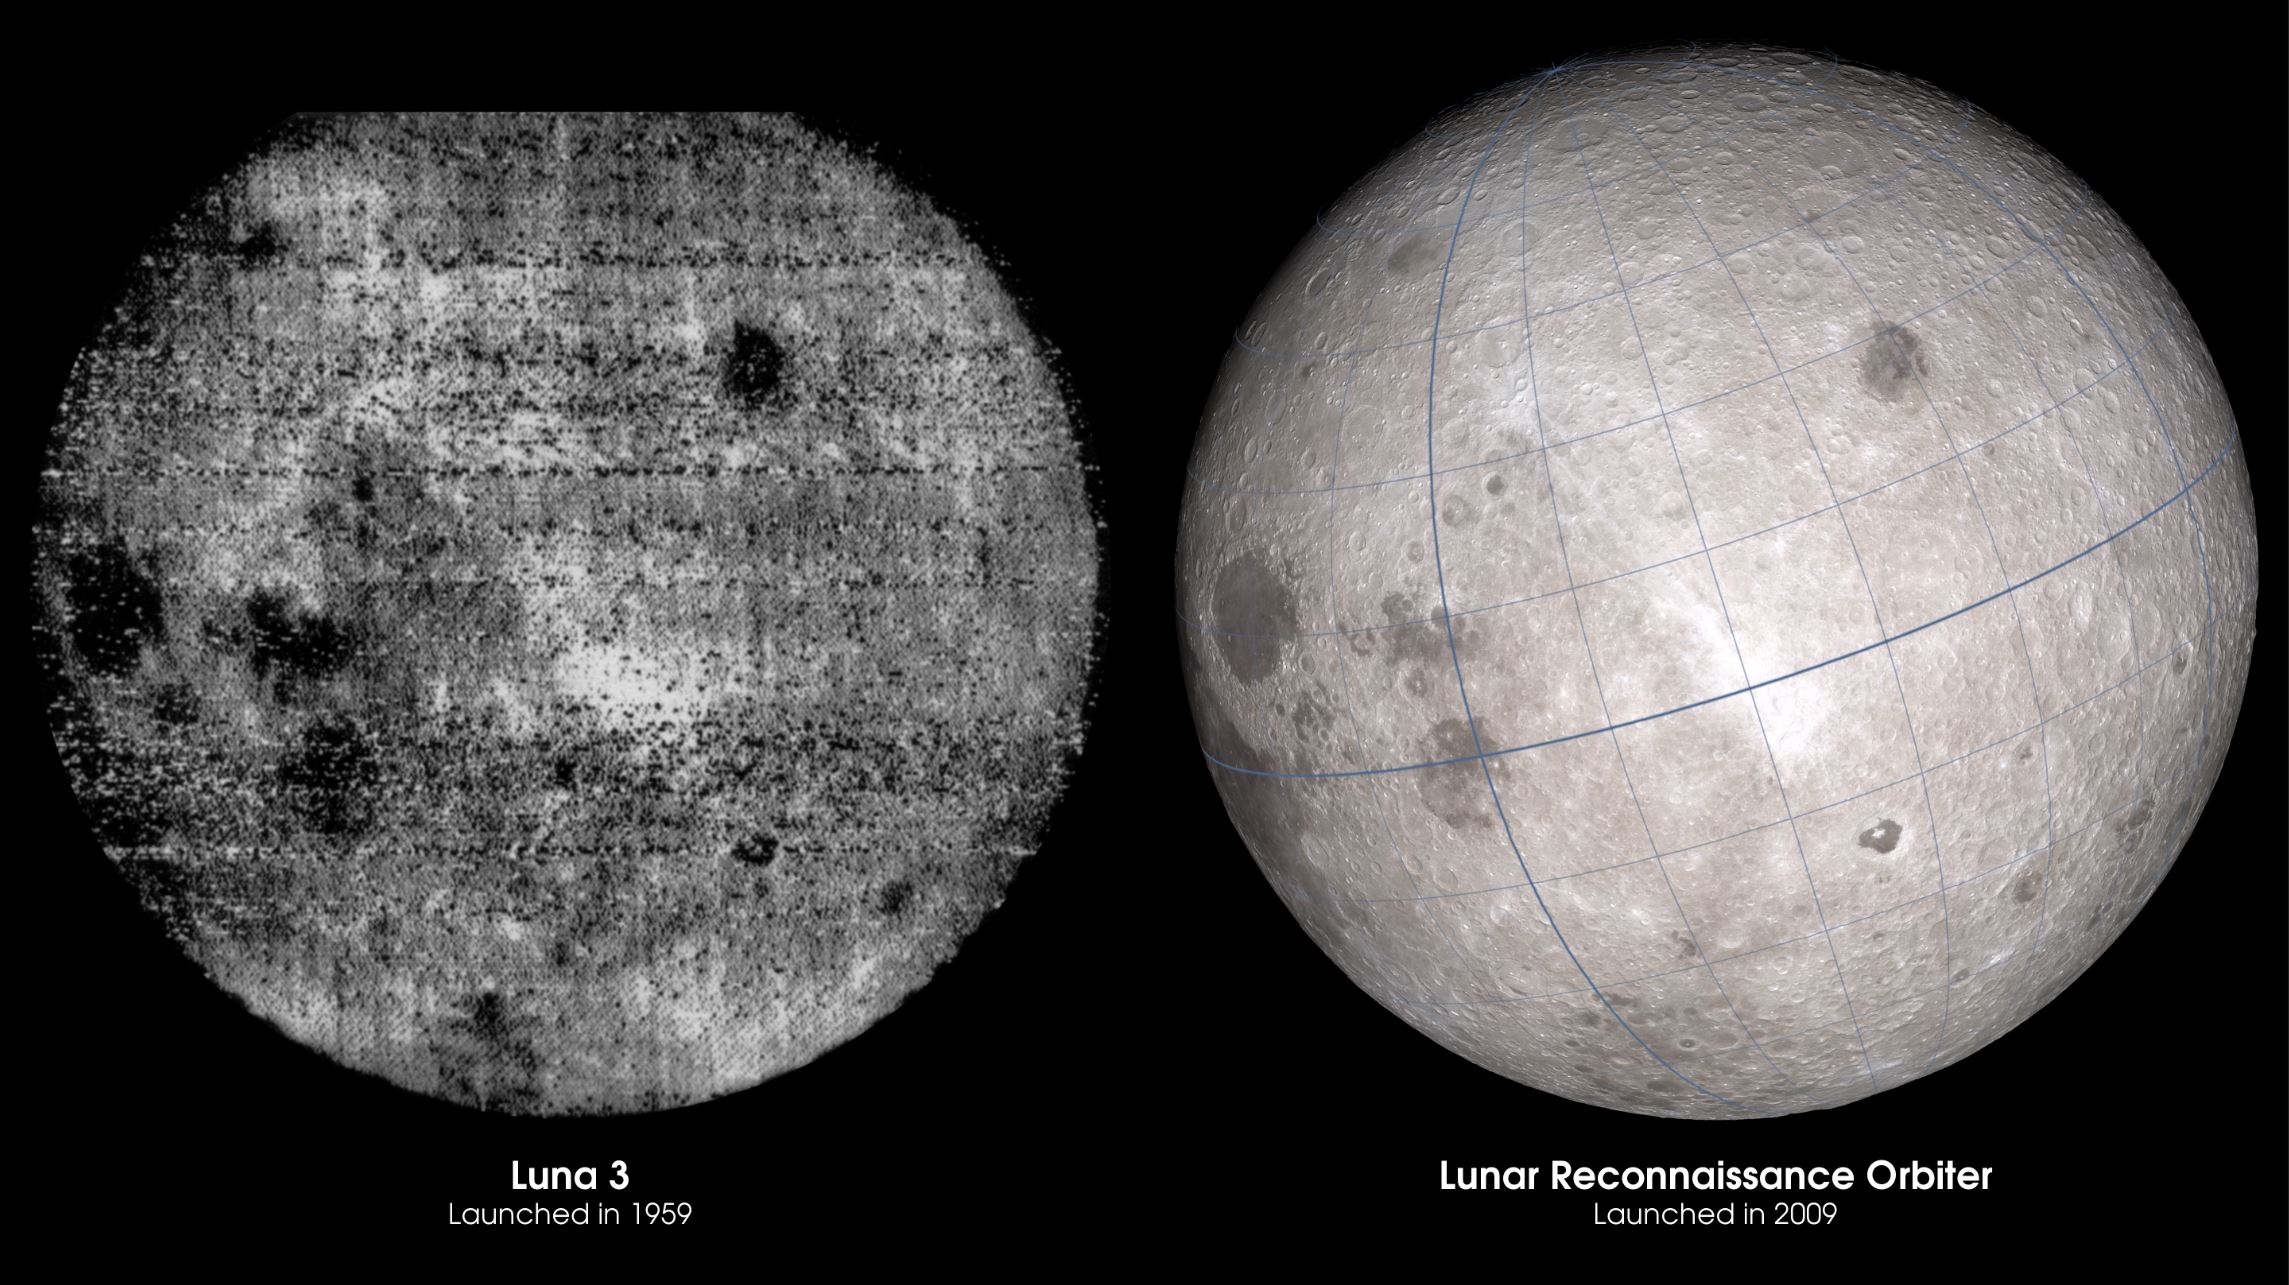 Первые снимки обратной стороны луны. Снимок обратной стороны Луны 1959. Луна 3 снимки обратной стороны Луны. Фото обратной стороны Луны 1959. Первые фотографии обратной стороны Луны 1959.